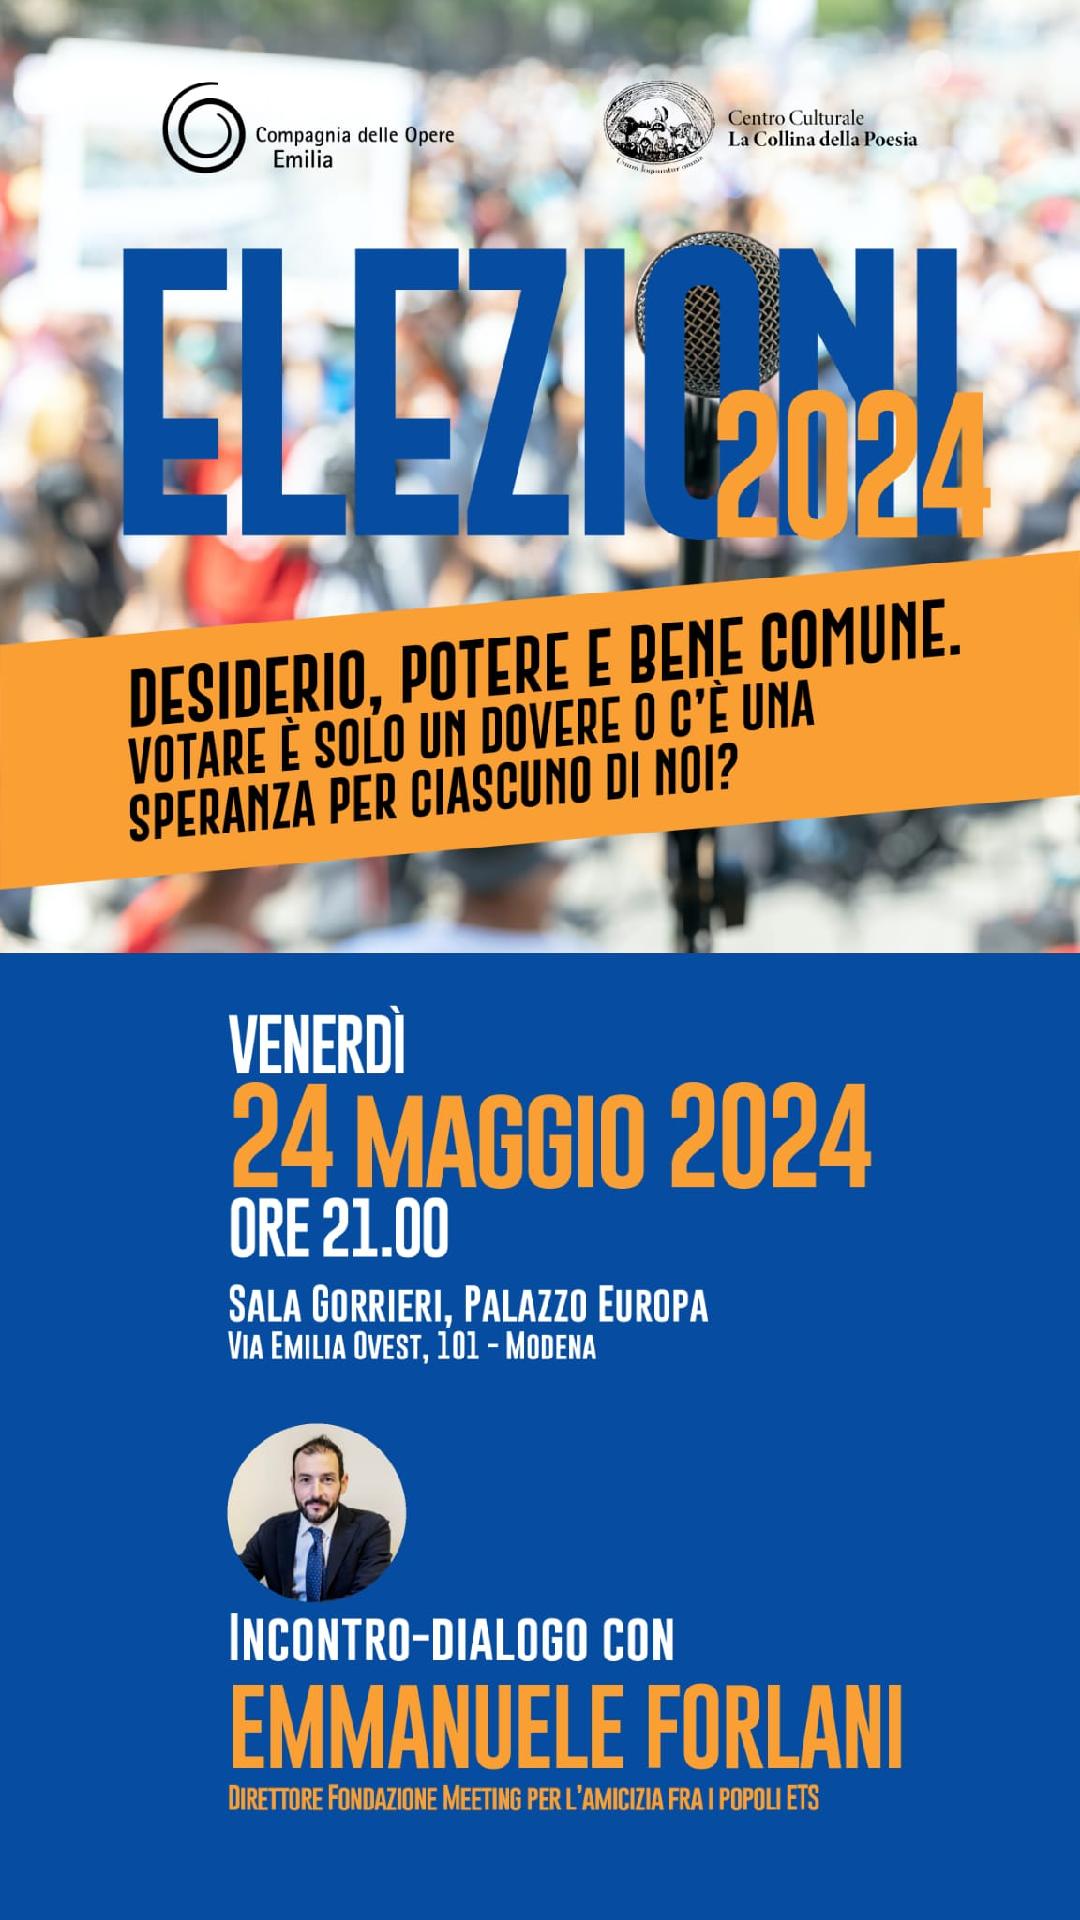 Featured image for “Modena: Elezioni 2024. Desiderio, potere e bene comune”